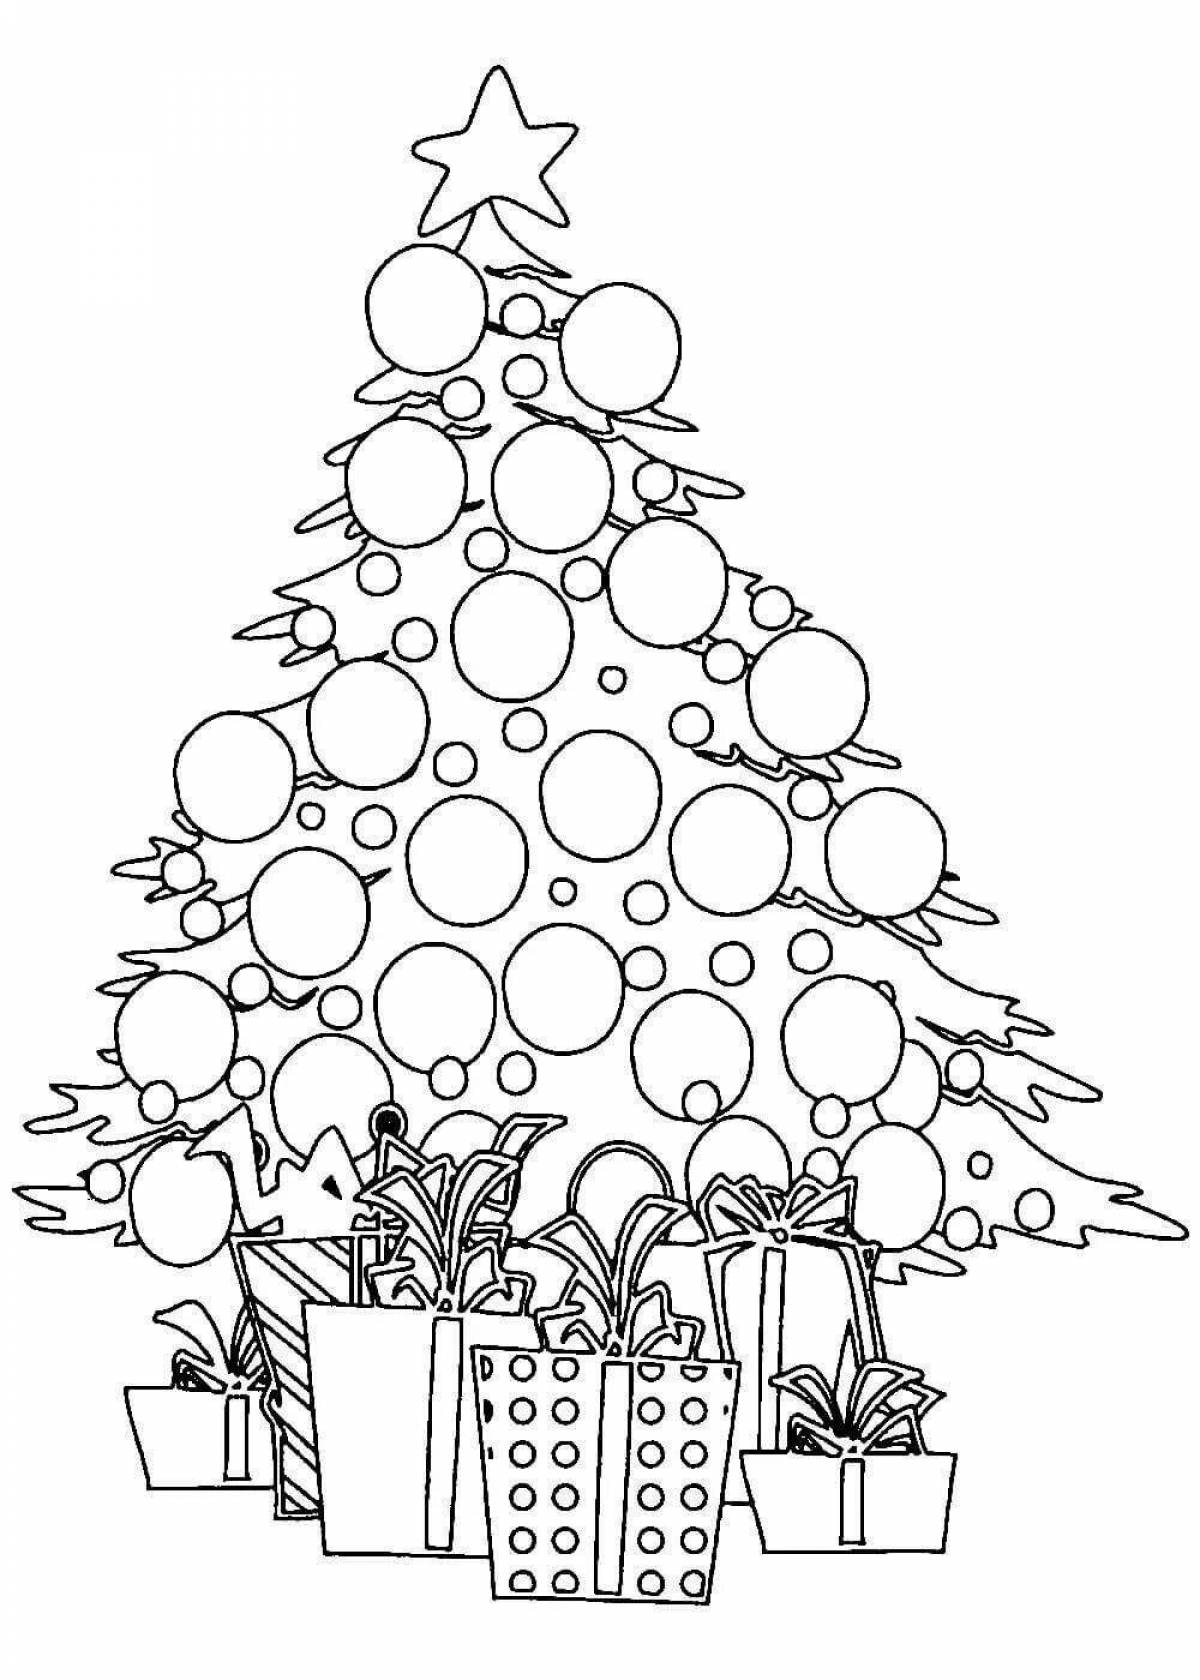 Christmas tree with balls #8